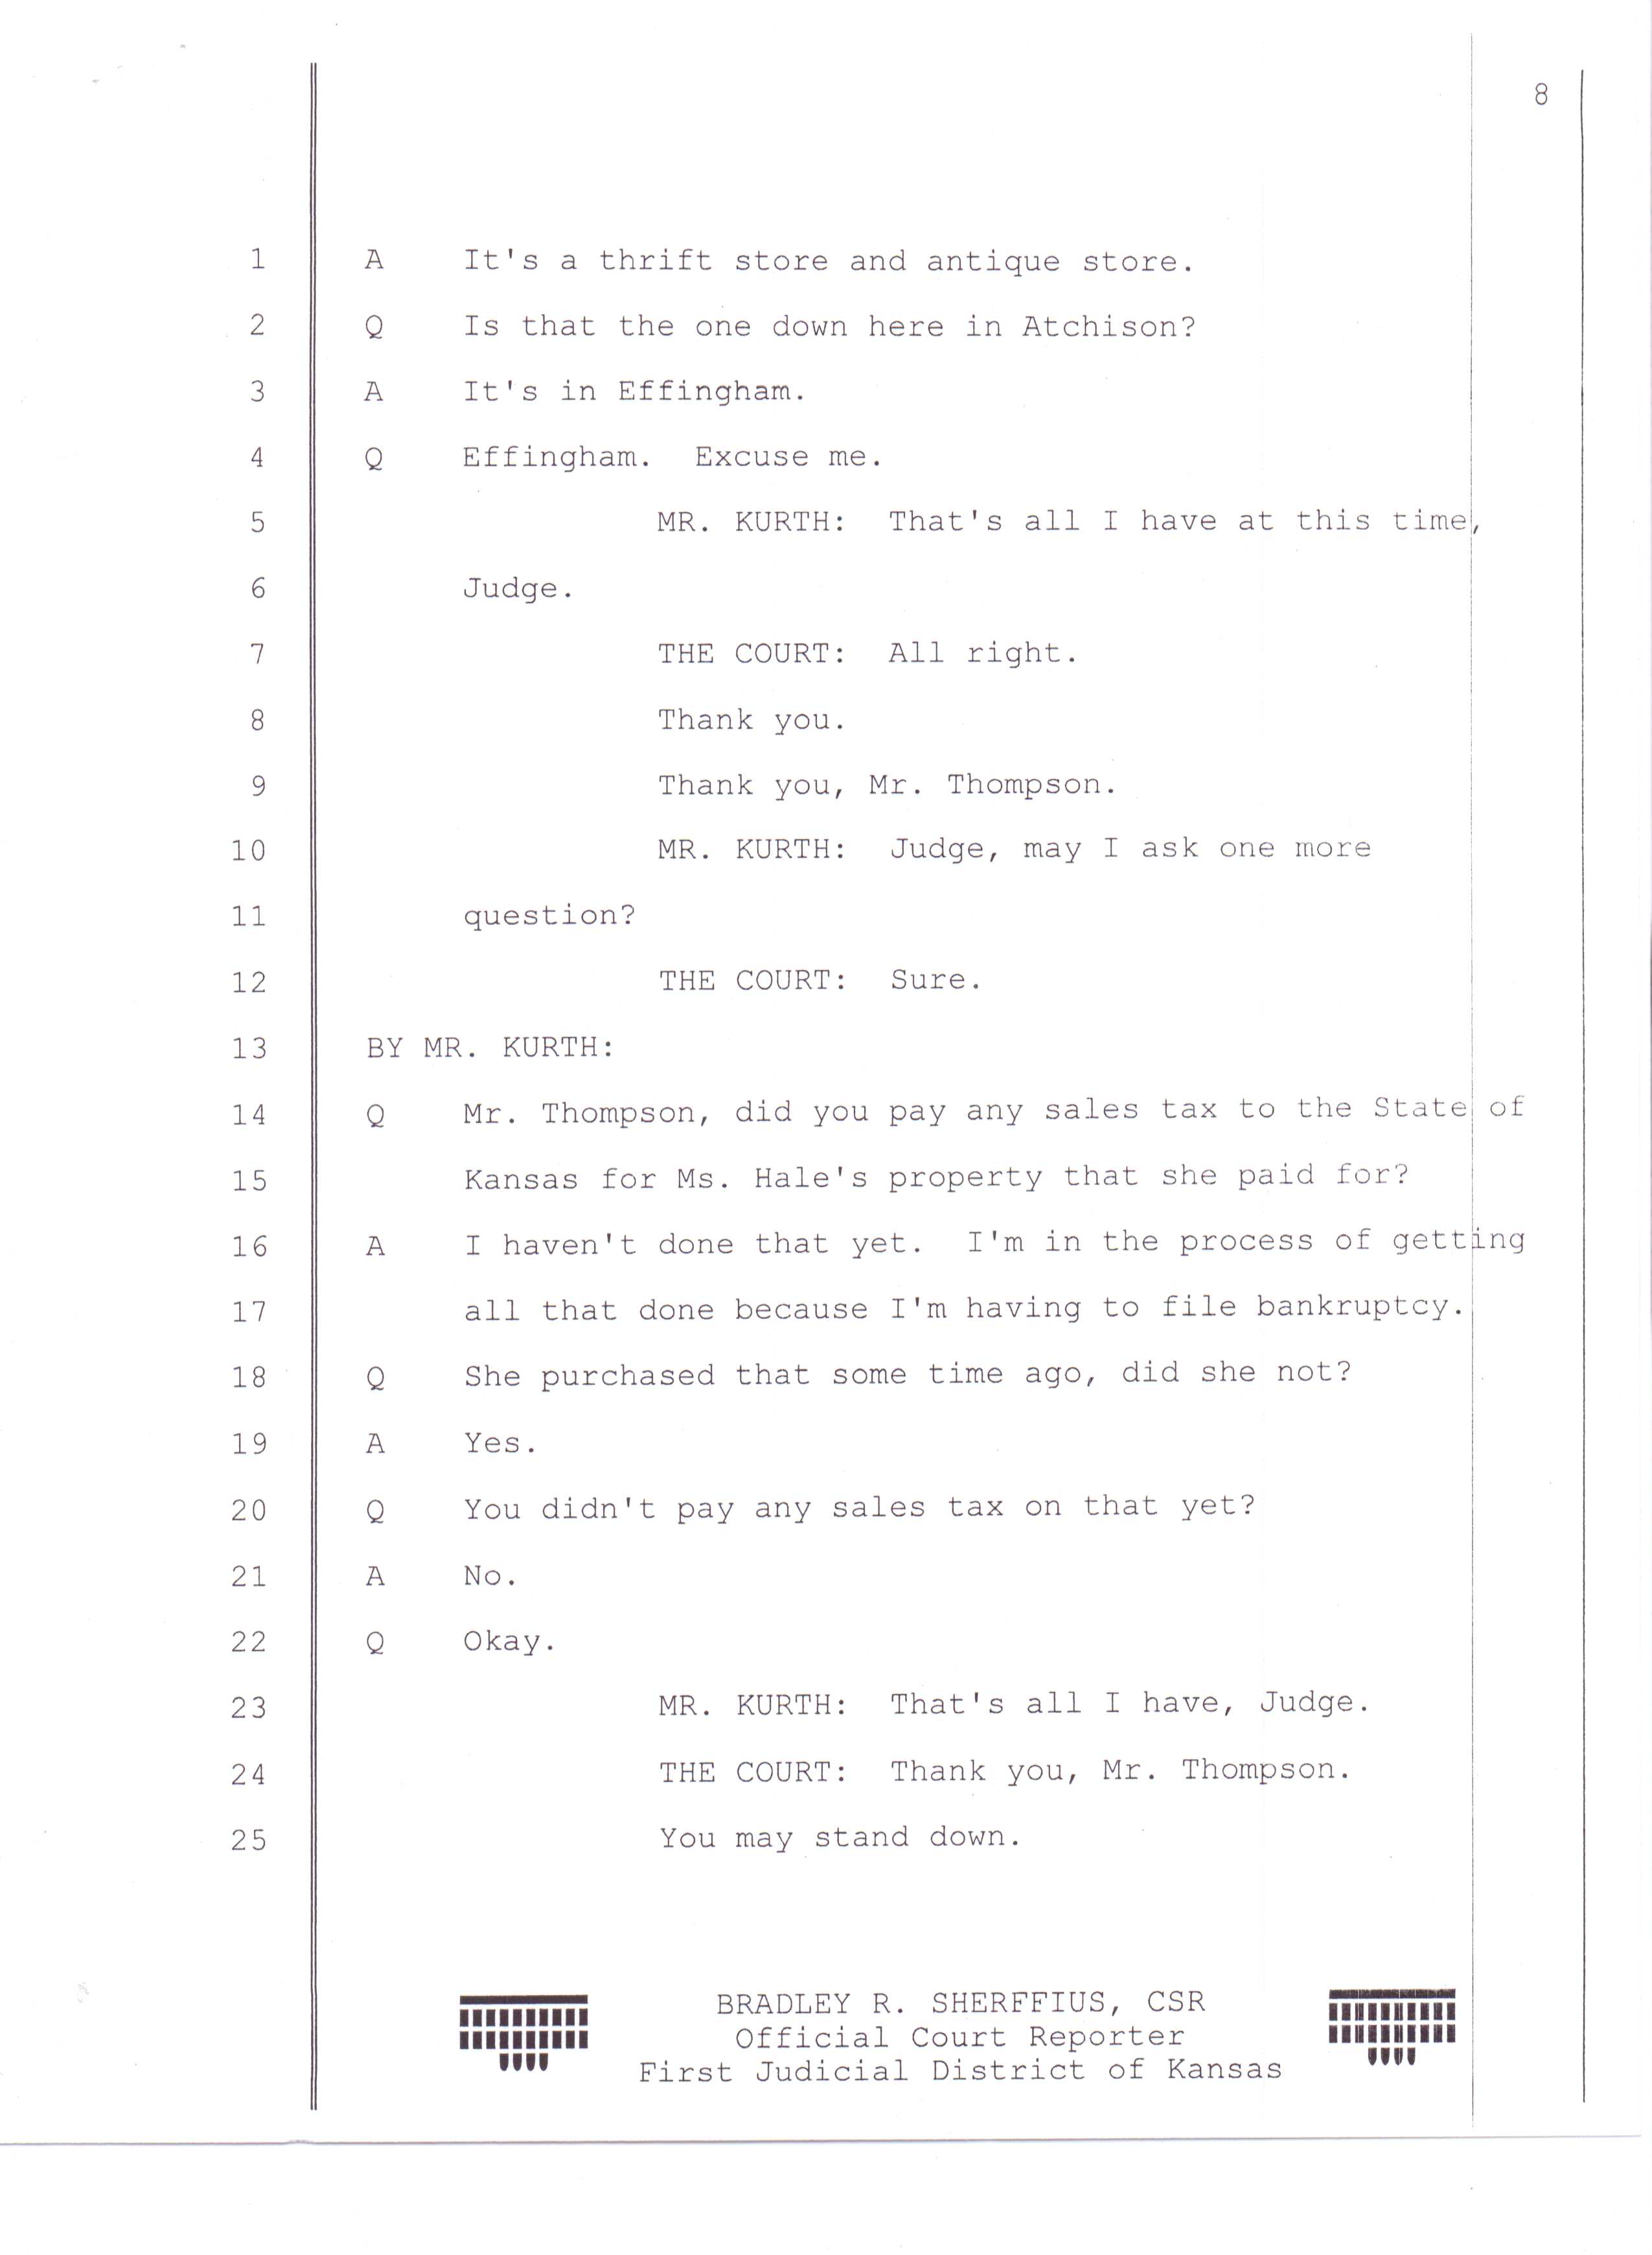 Pg 8 of court transcript